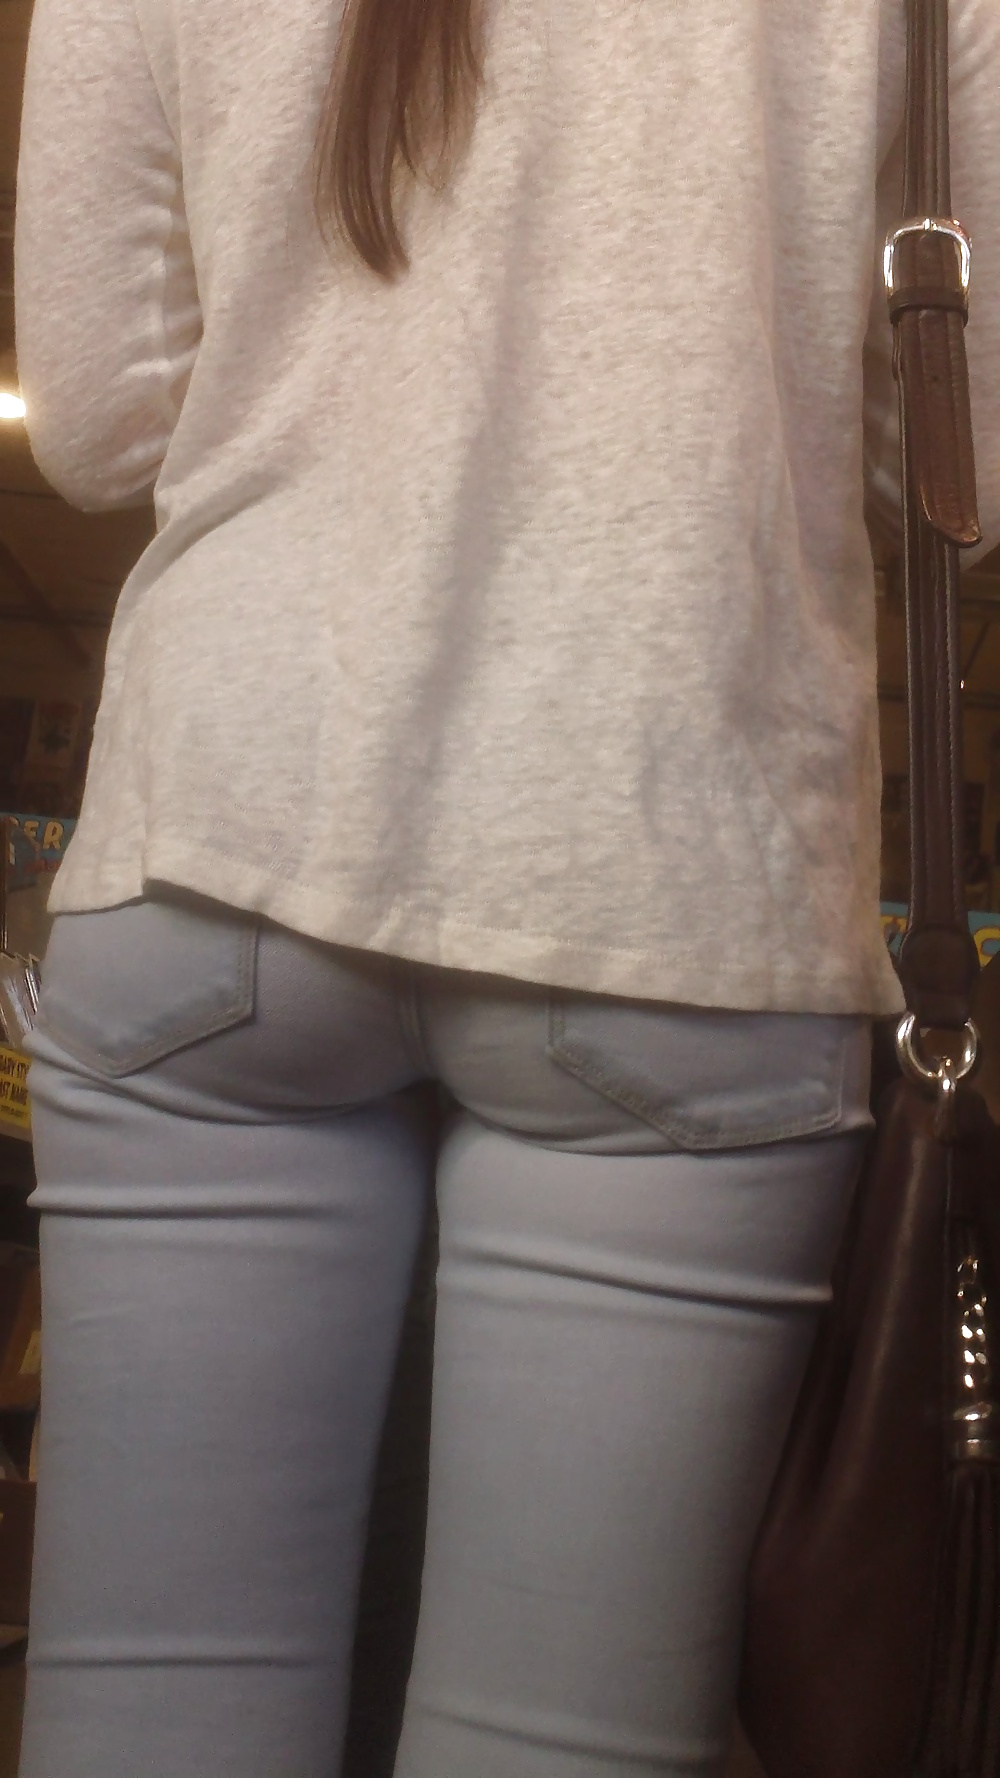 Popular teen girls ass & butt in jeans Part 7 #39948709